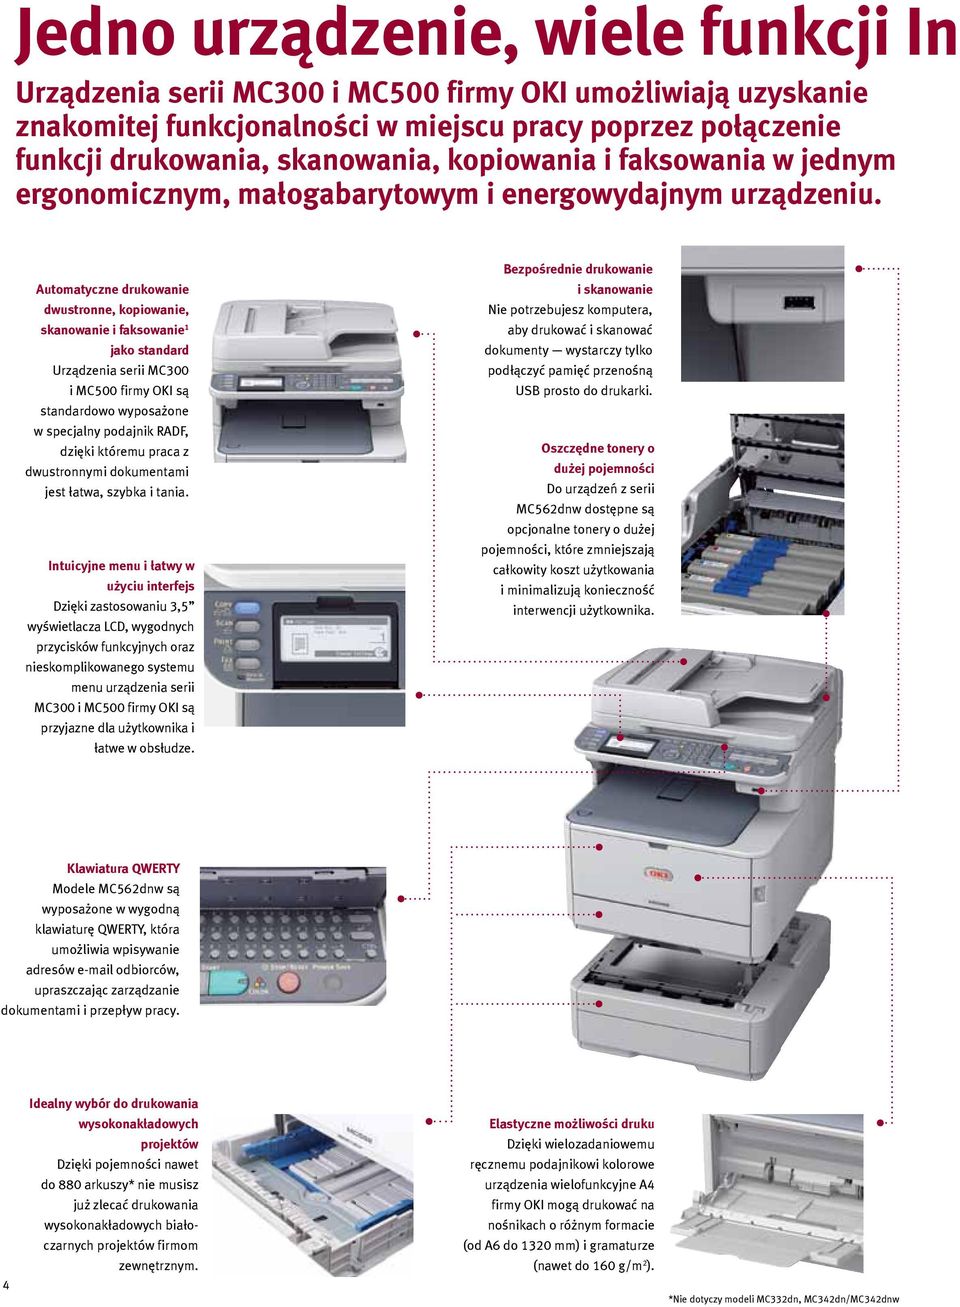 Automatyczne drukowanie dwustronne, kopiowanie, skanowanie i faksowanie 1 jako standard Urządzenia serii MC300 i MC500 firmy OKI są standardowo wyposażone w specjalny podajnik RADF, dzięki któremu